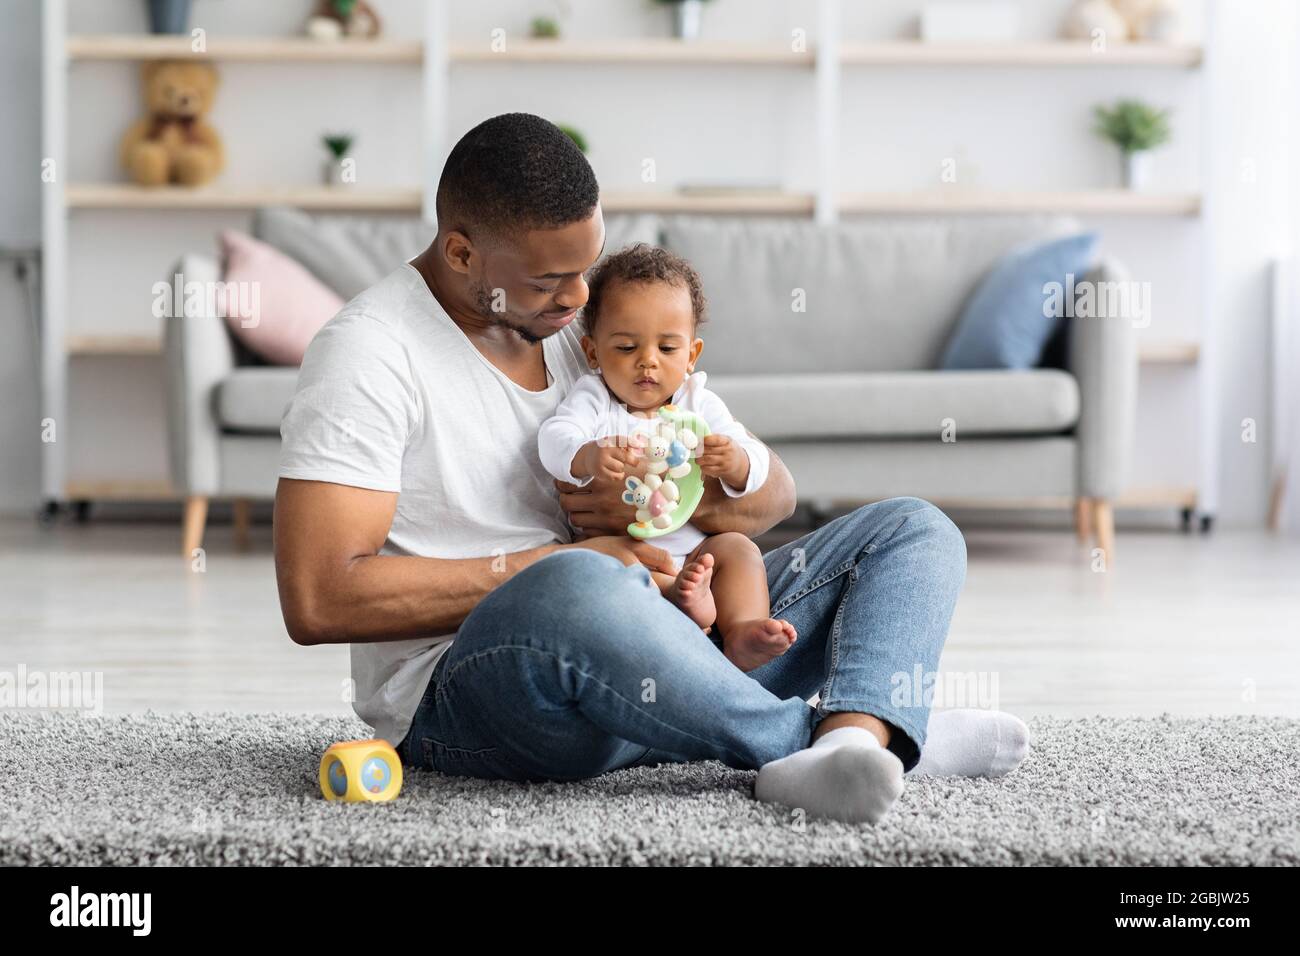 Concept de paternité. Joyeux Black Man jouant avec un adorable bébé enfant à la maison Banque D'Images